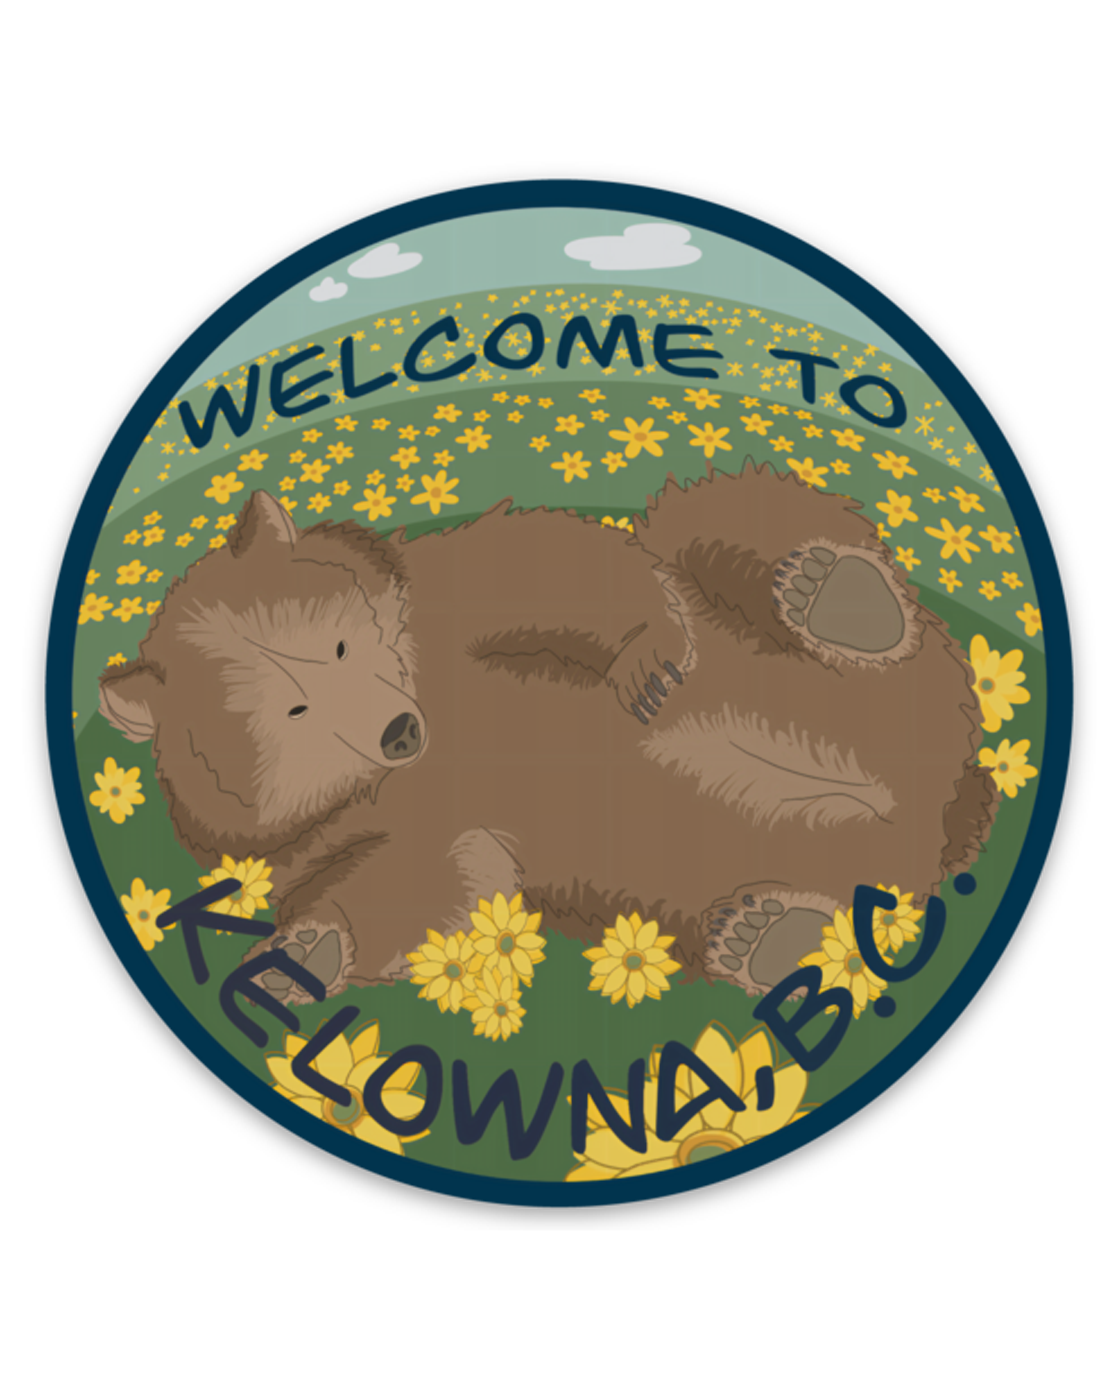 'Welcome to Kelowna' Bear Vinyl Sticker